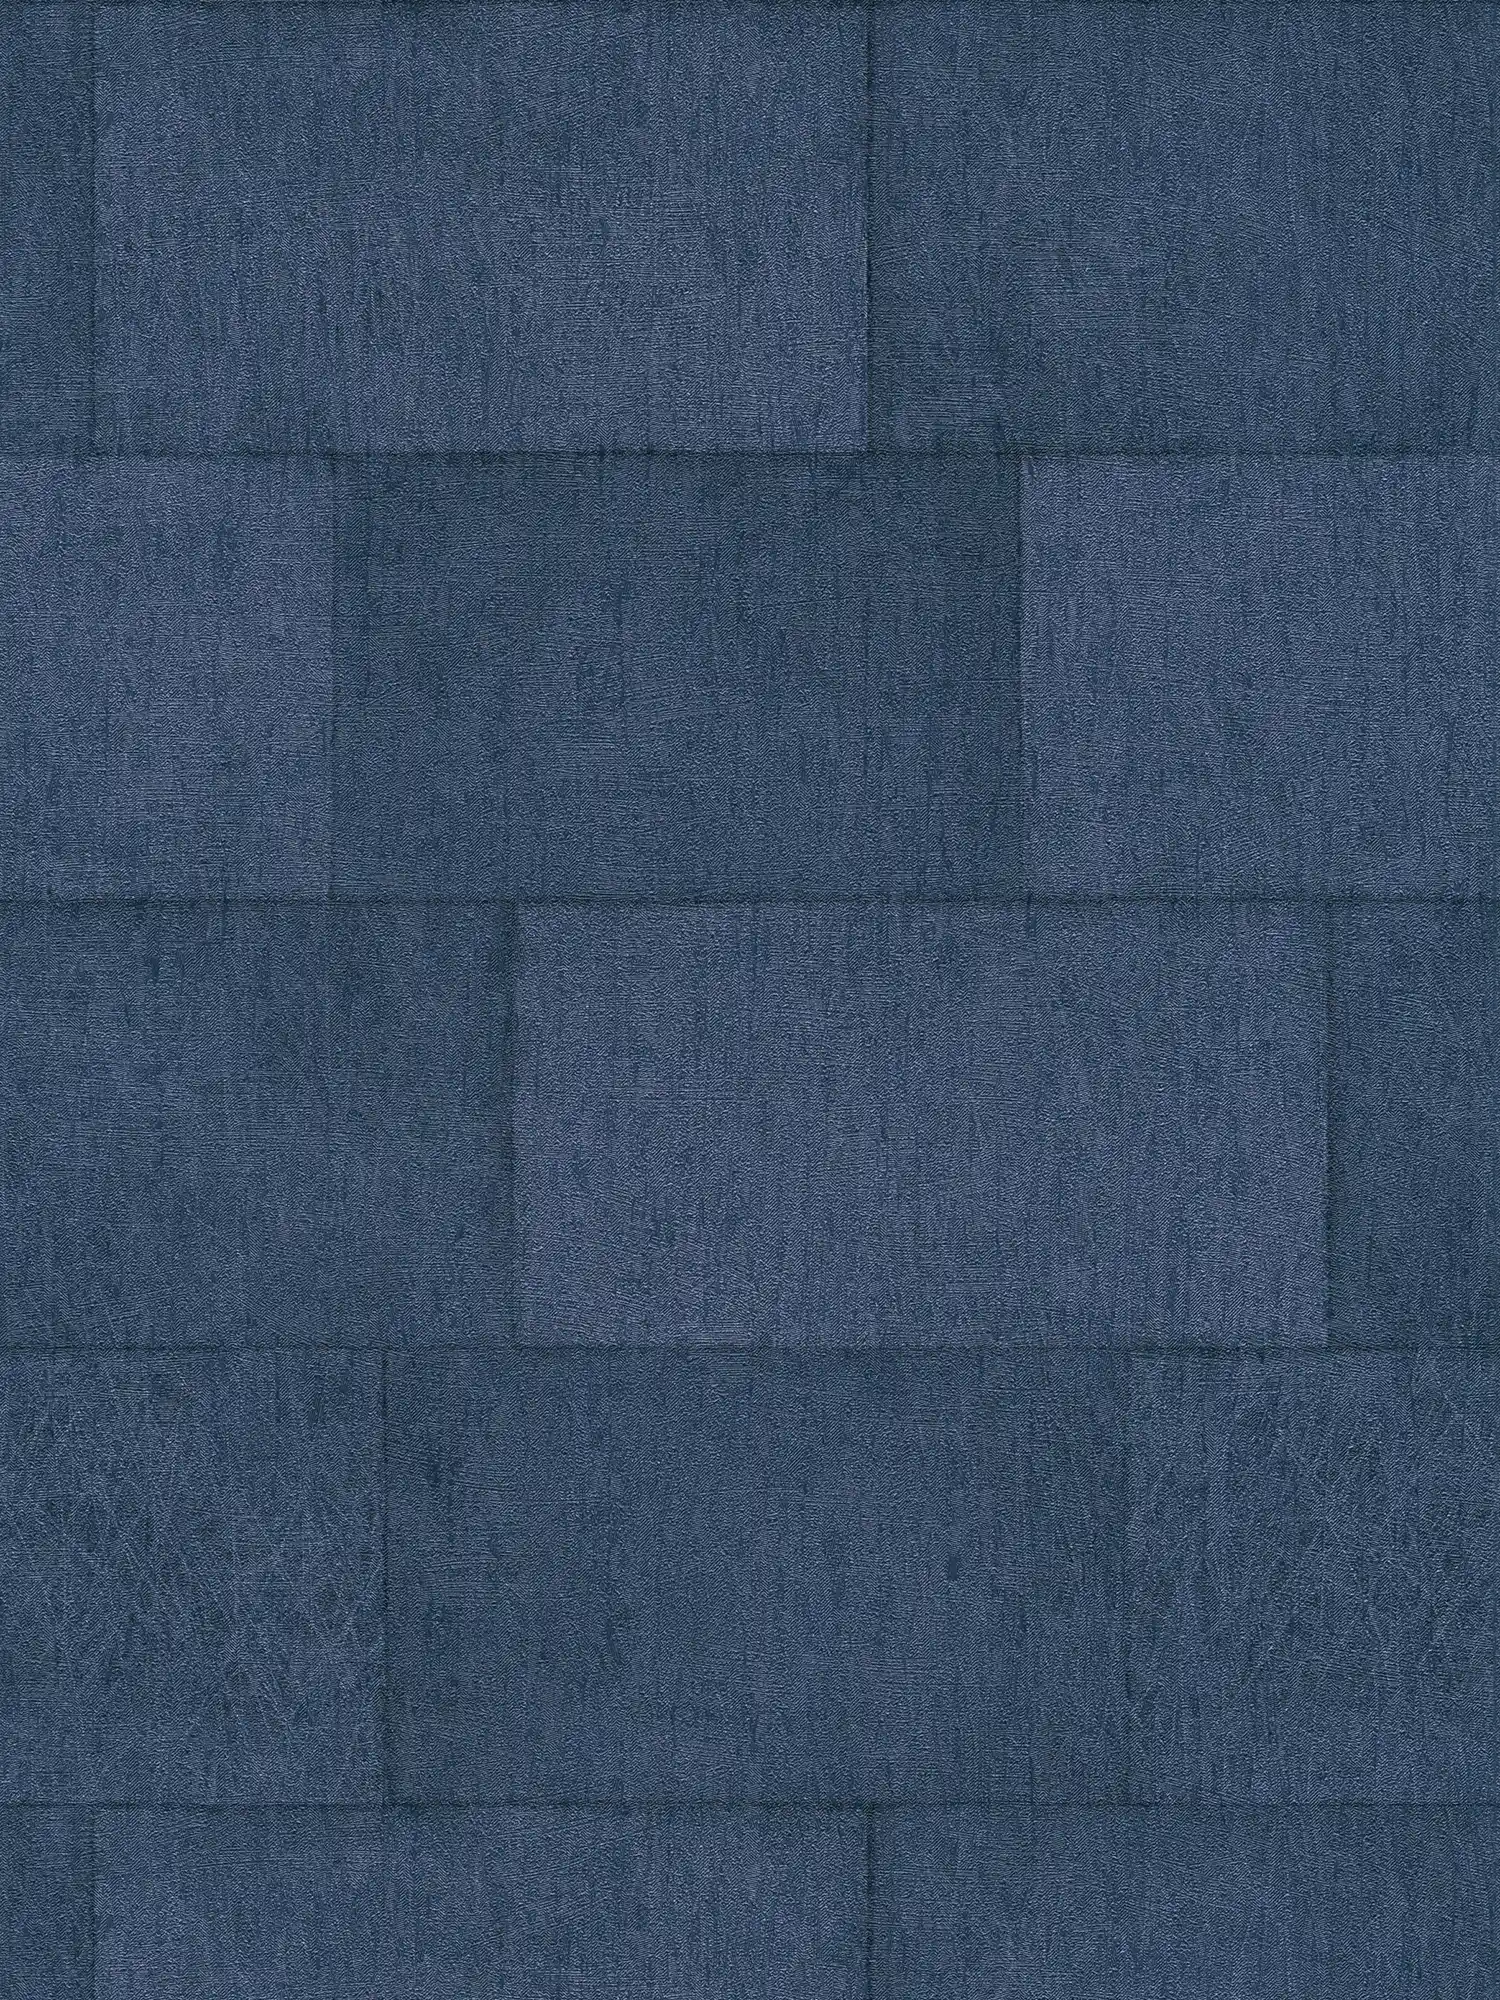 Steenbehang donkerblauw met glanseffect - blauw
